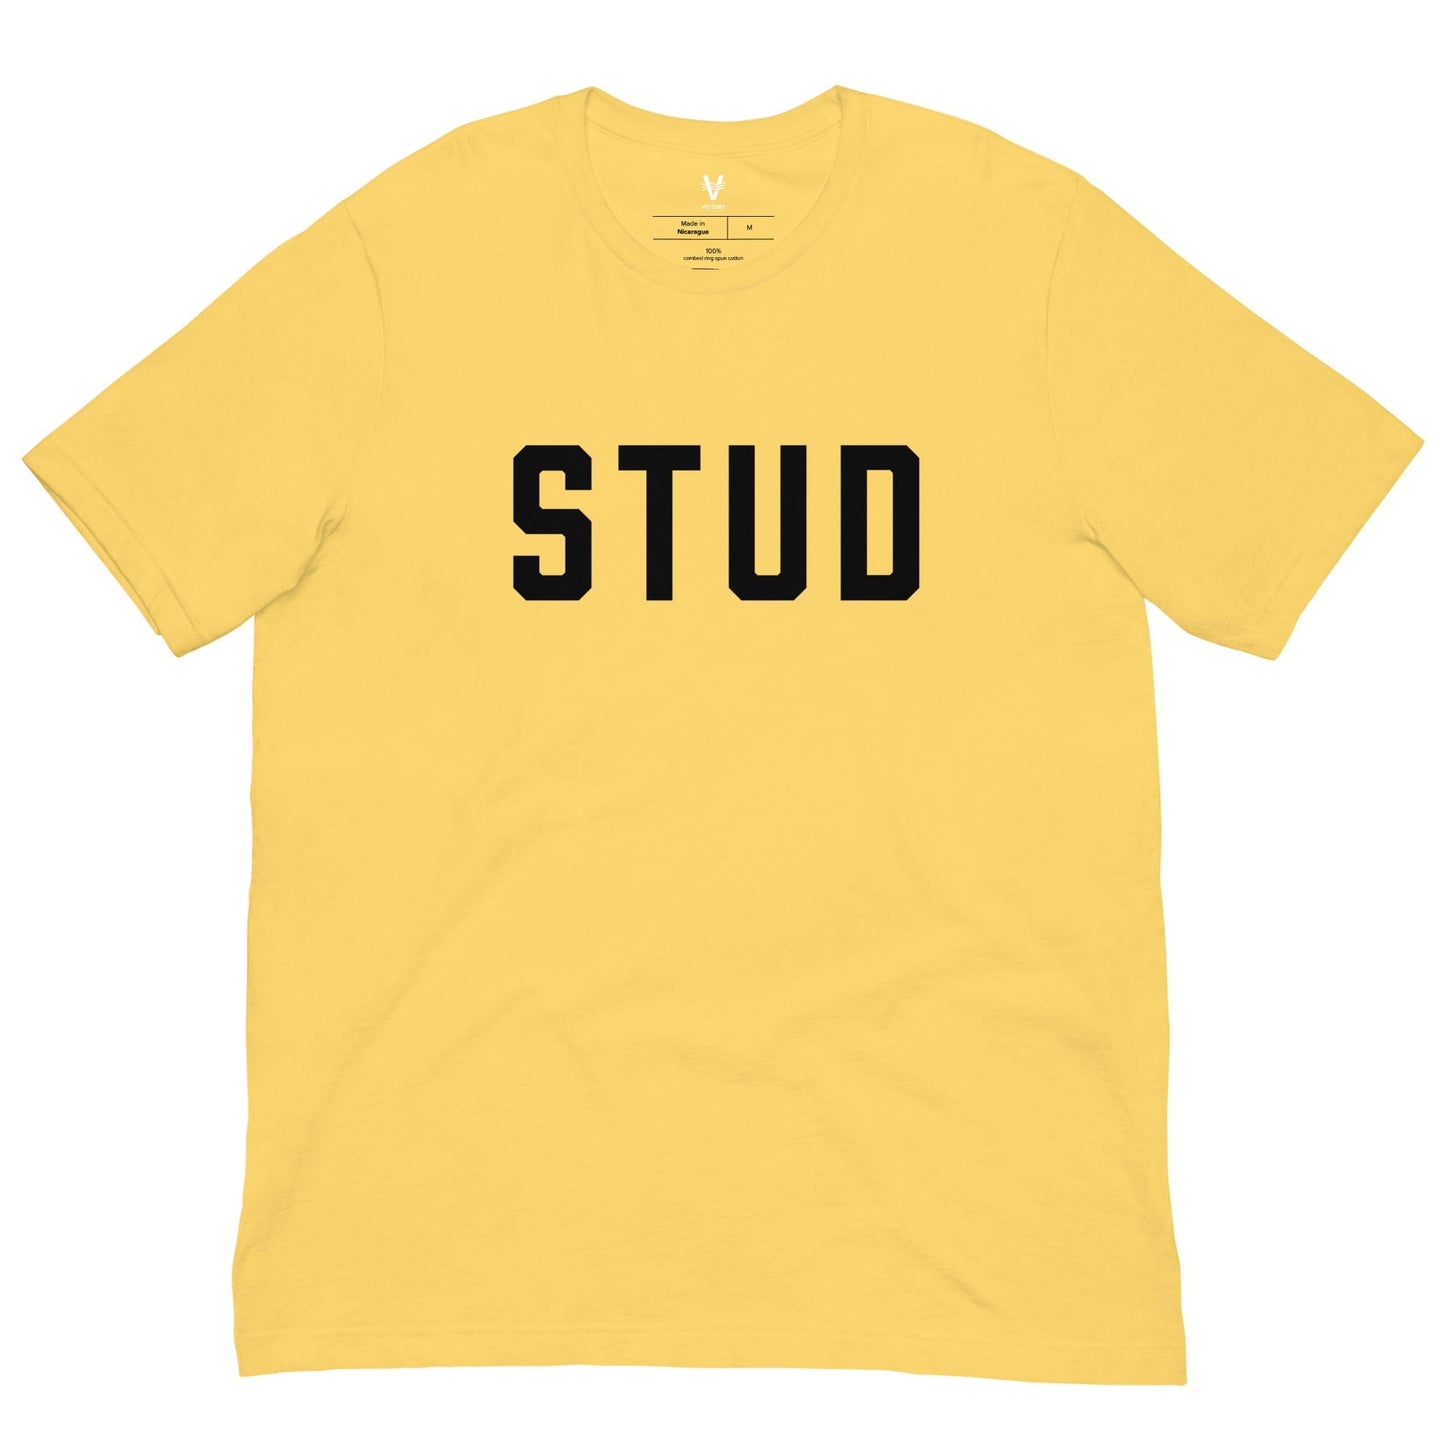 Stud - Unisex Short Sleeve Tee